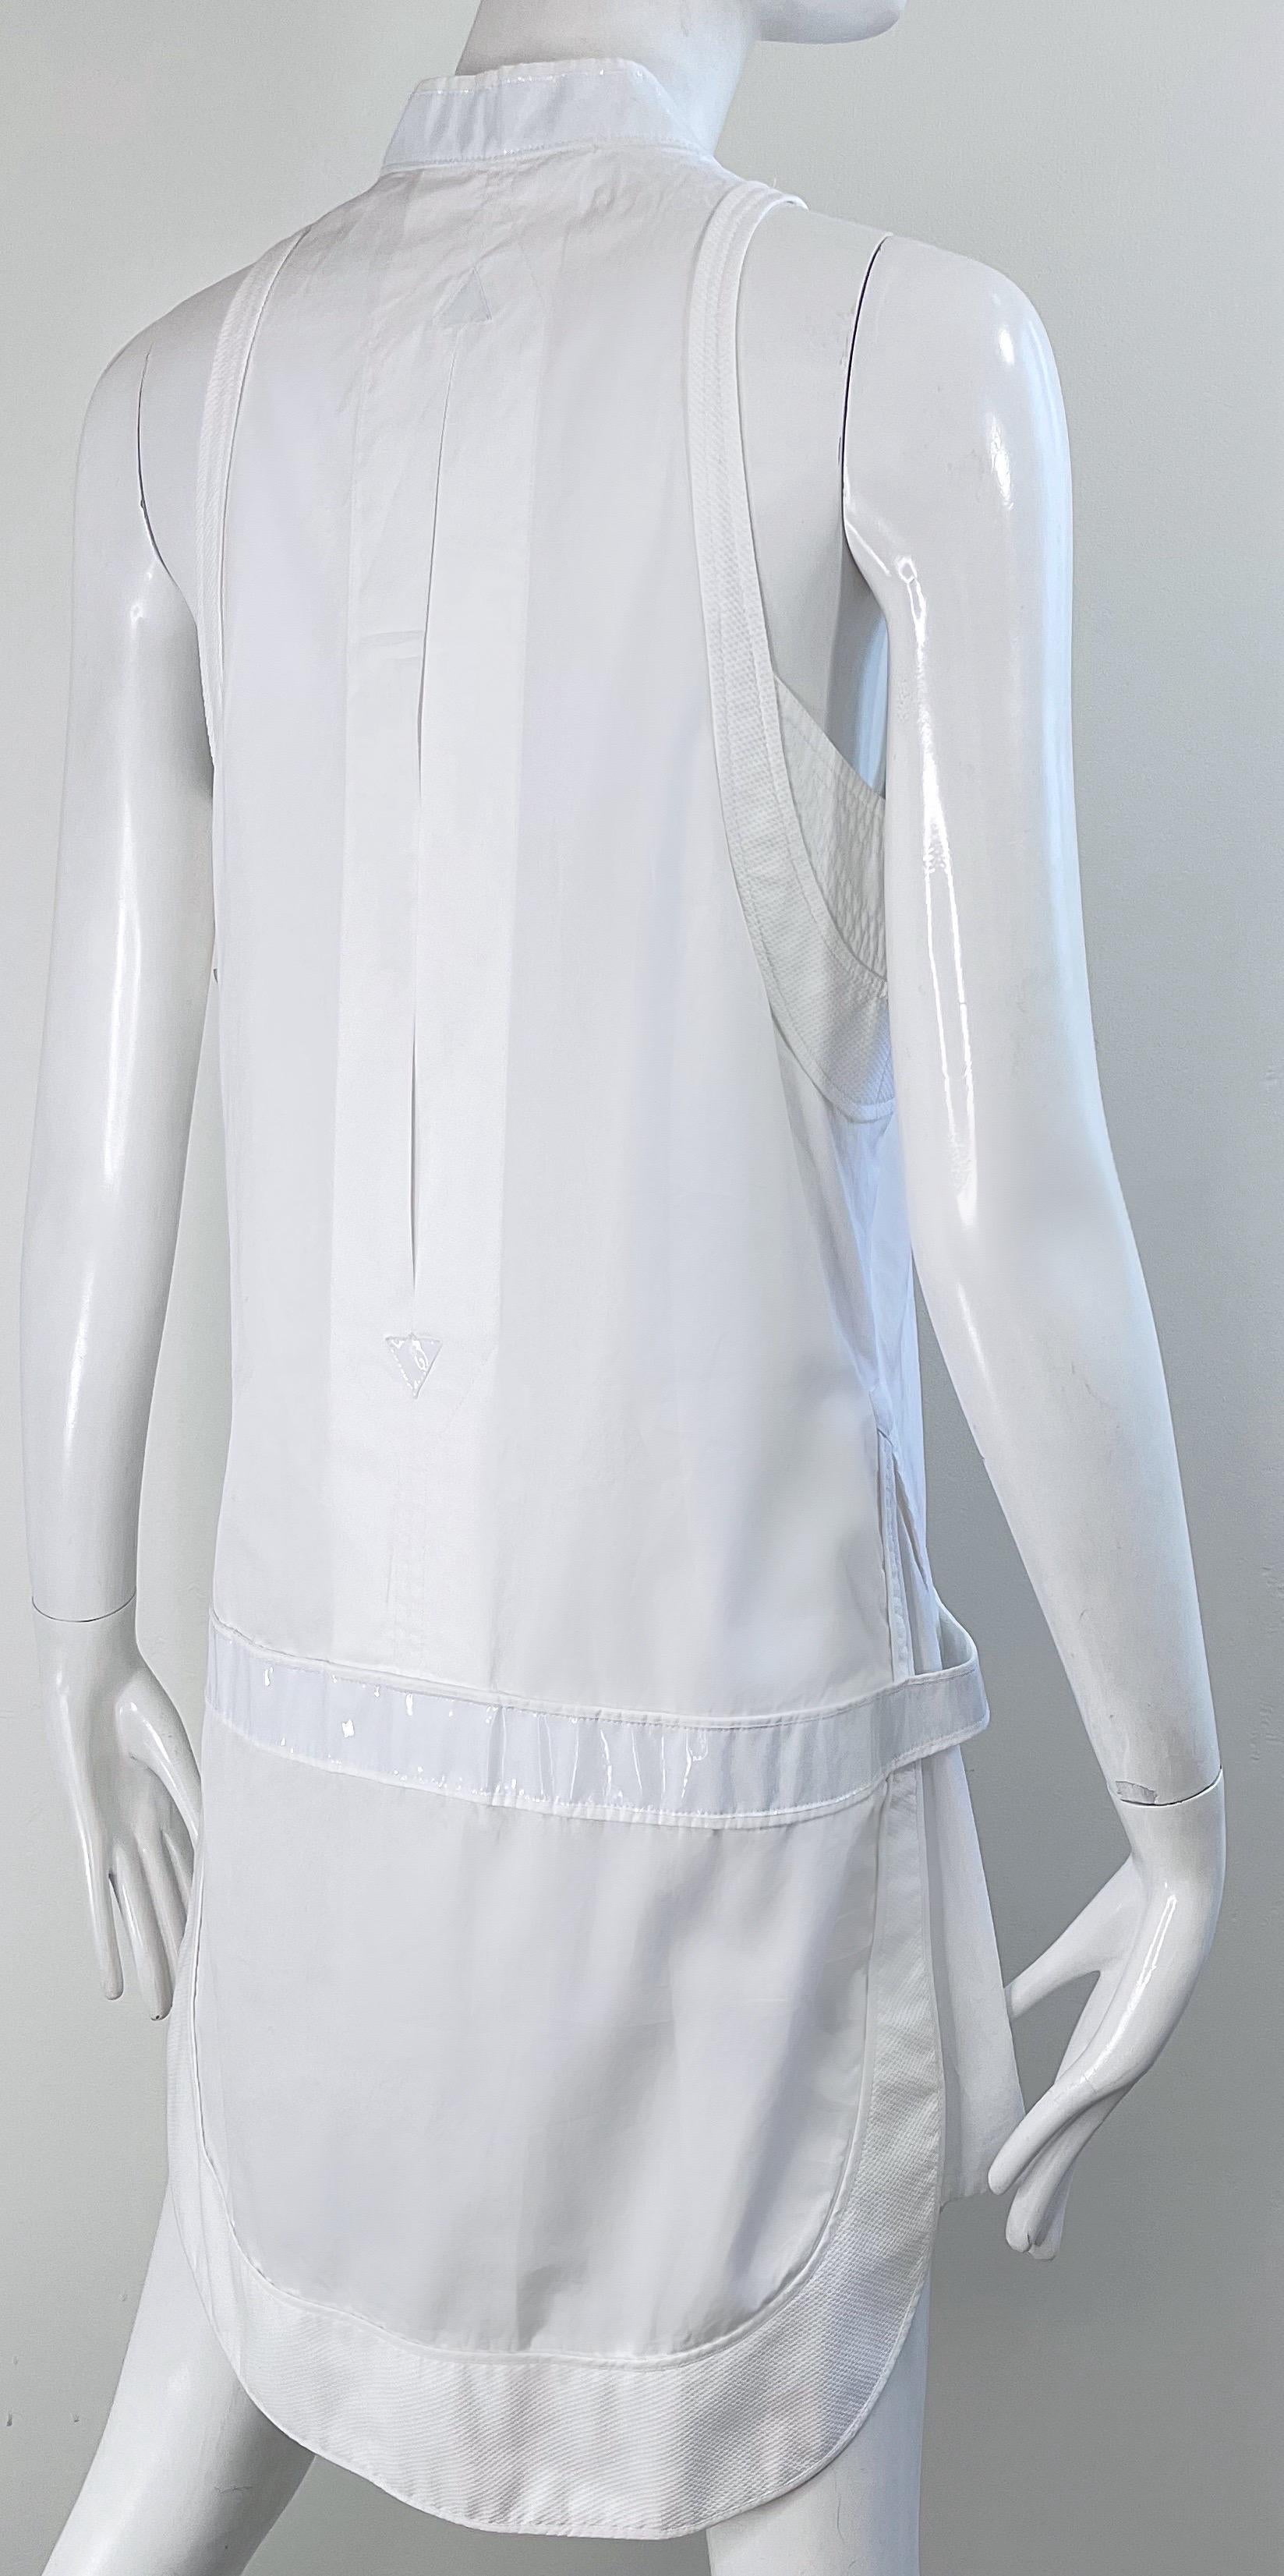 Balenciaga Spring 2007 by Nicolas Ghesquiere Size 38 / 8 White Tuxedo Dress  For Sale 11